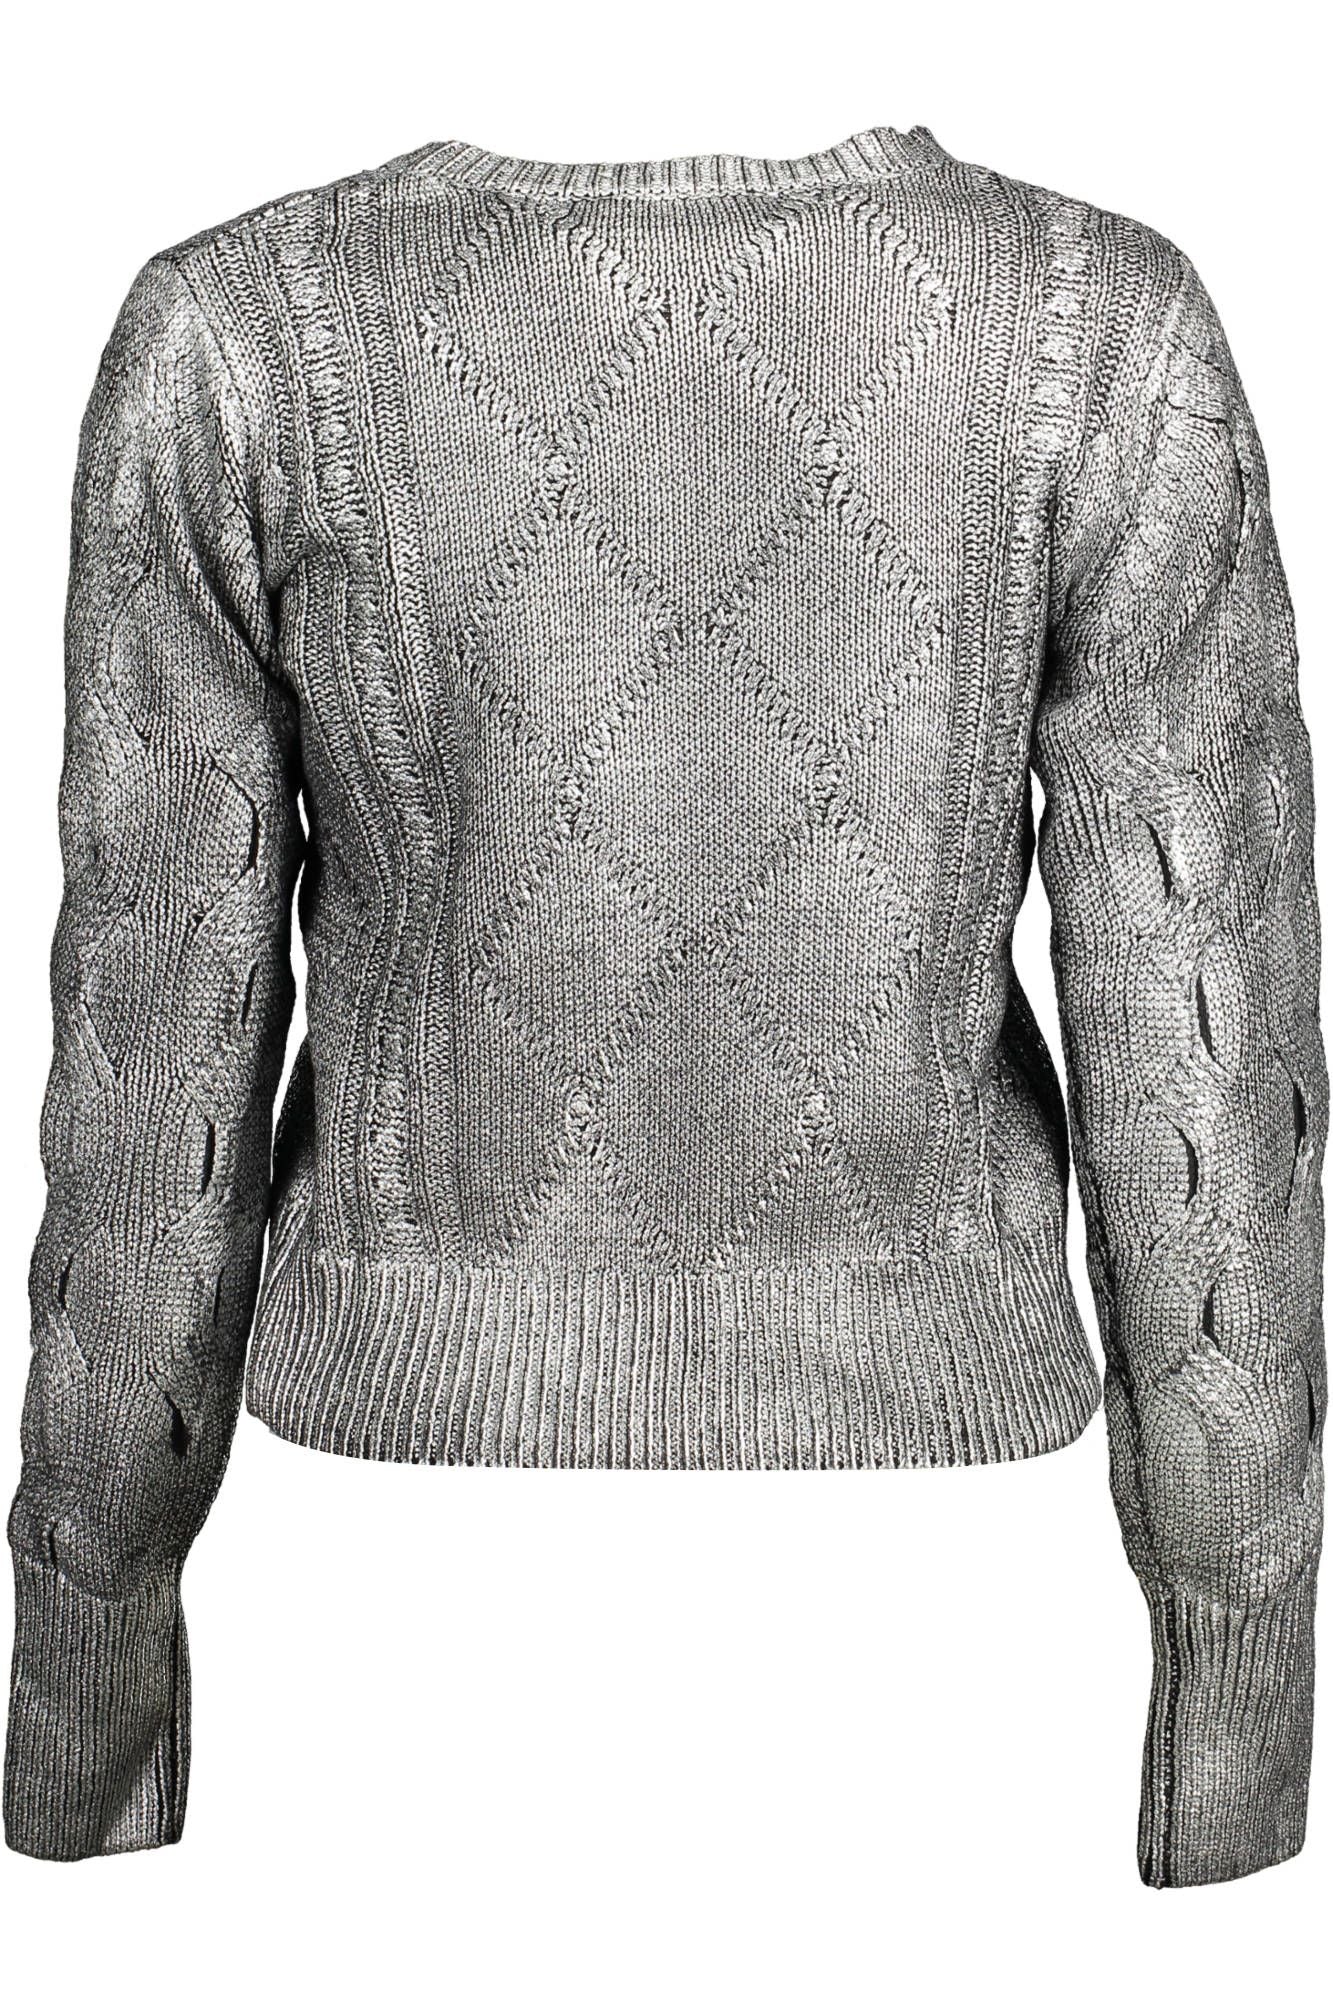 Desigual Silver Cotton Sweater